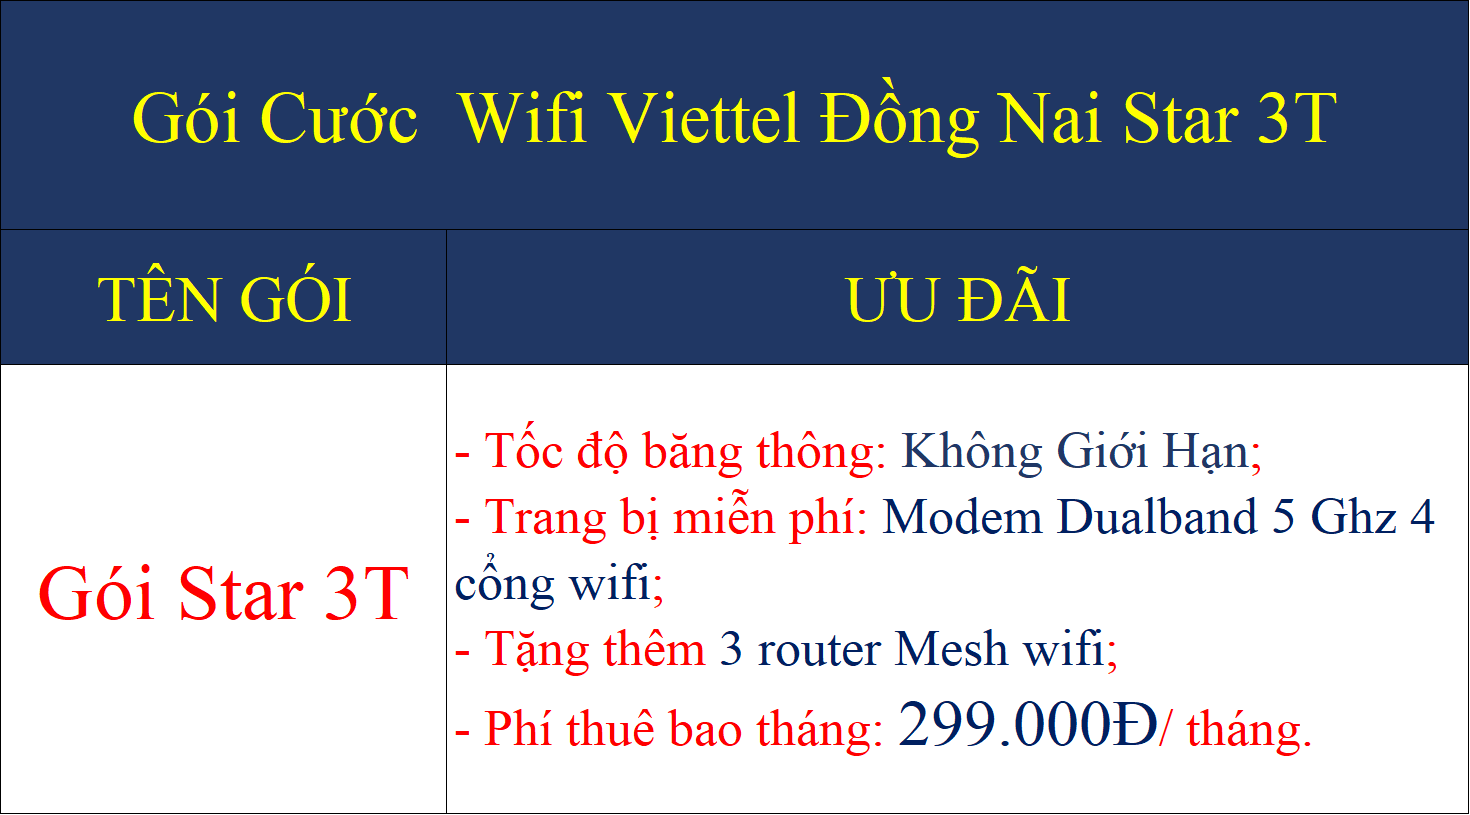 Gói cước wifi Viettel Đồng Nai Star 3T